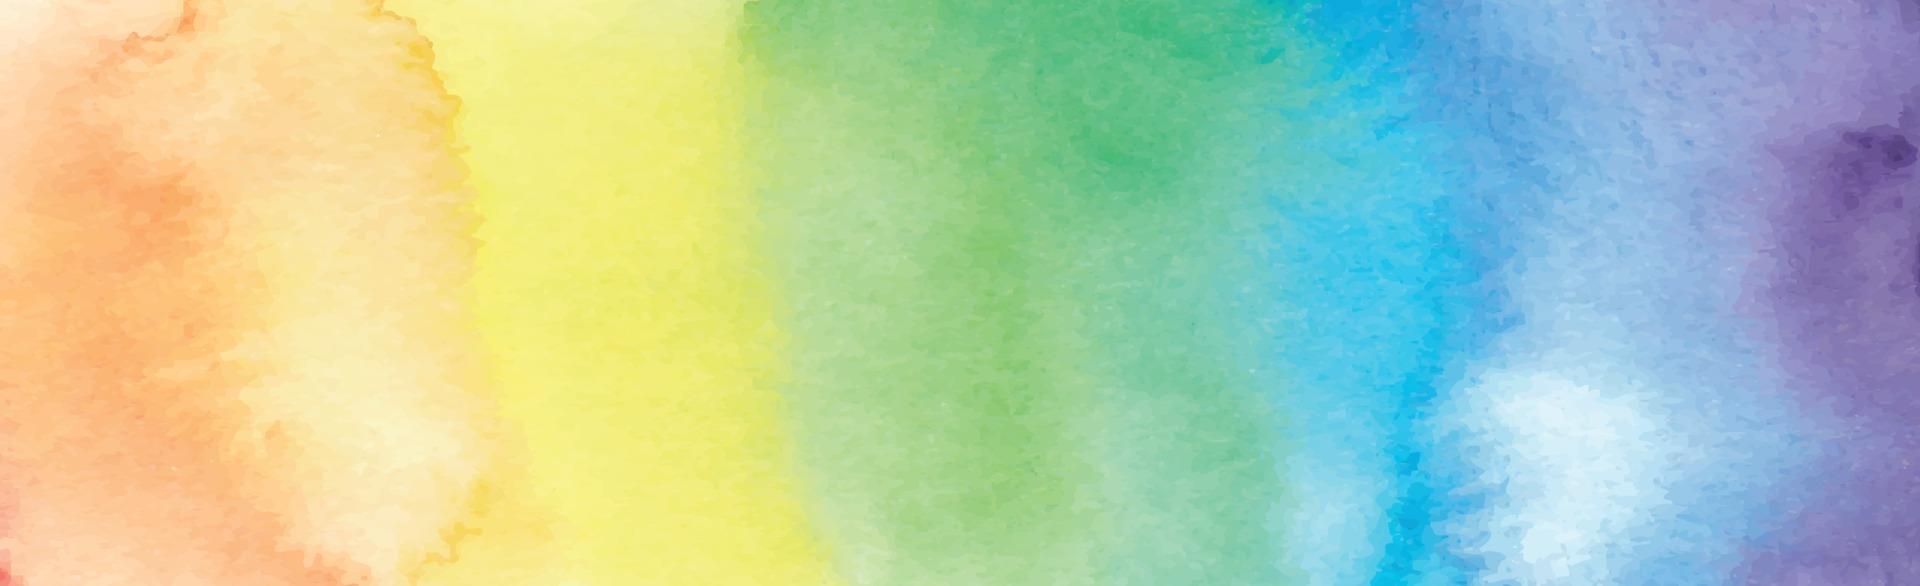 texture panoramique d'aquarelle multicolore réaliste sur fond blanc - vecteur